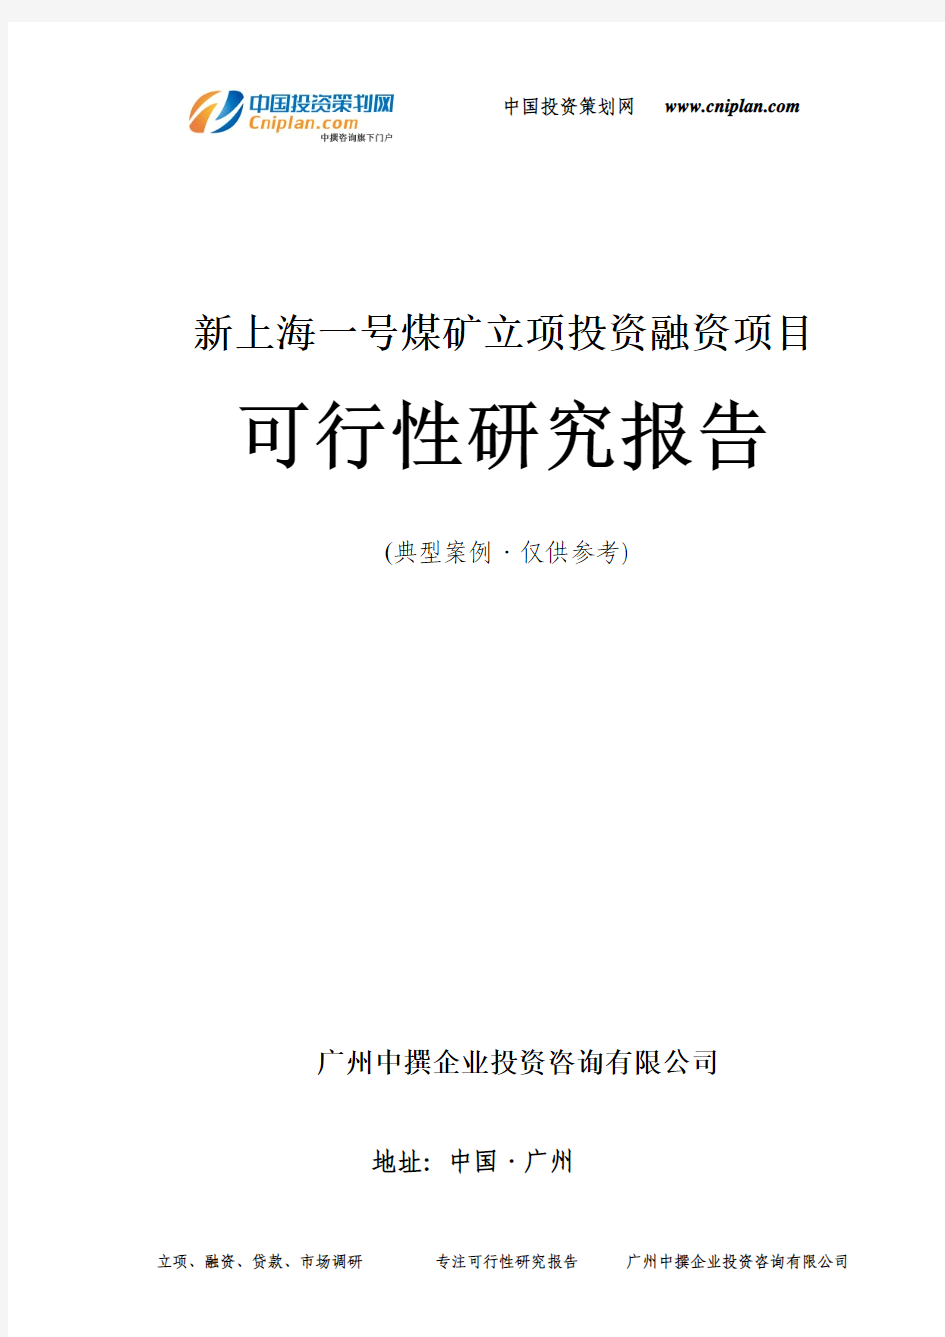 新上海一号煤矿融资投资立项项目可行性研究报告(中撰咨询)